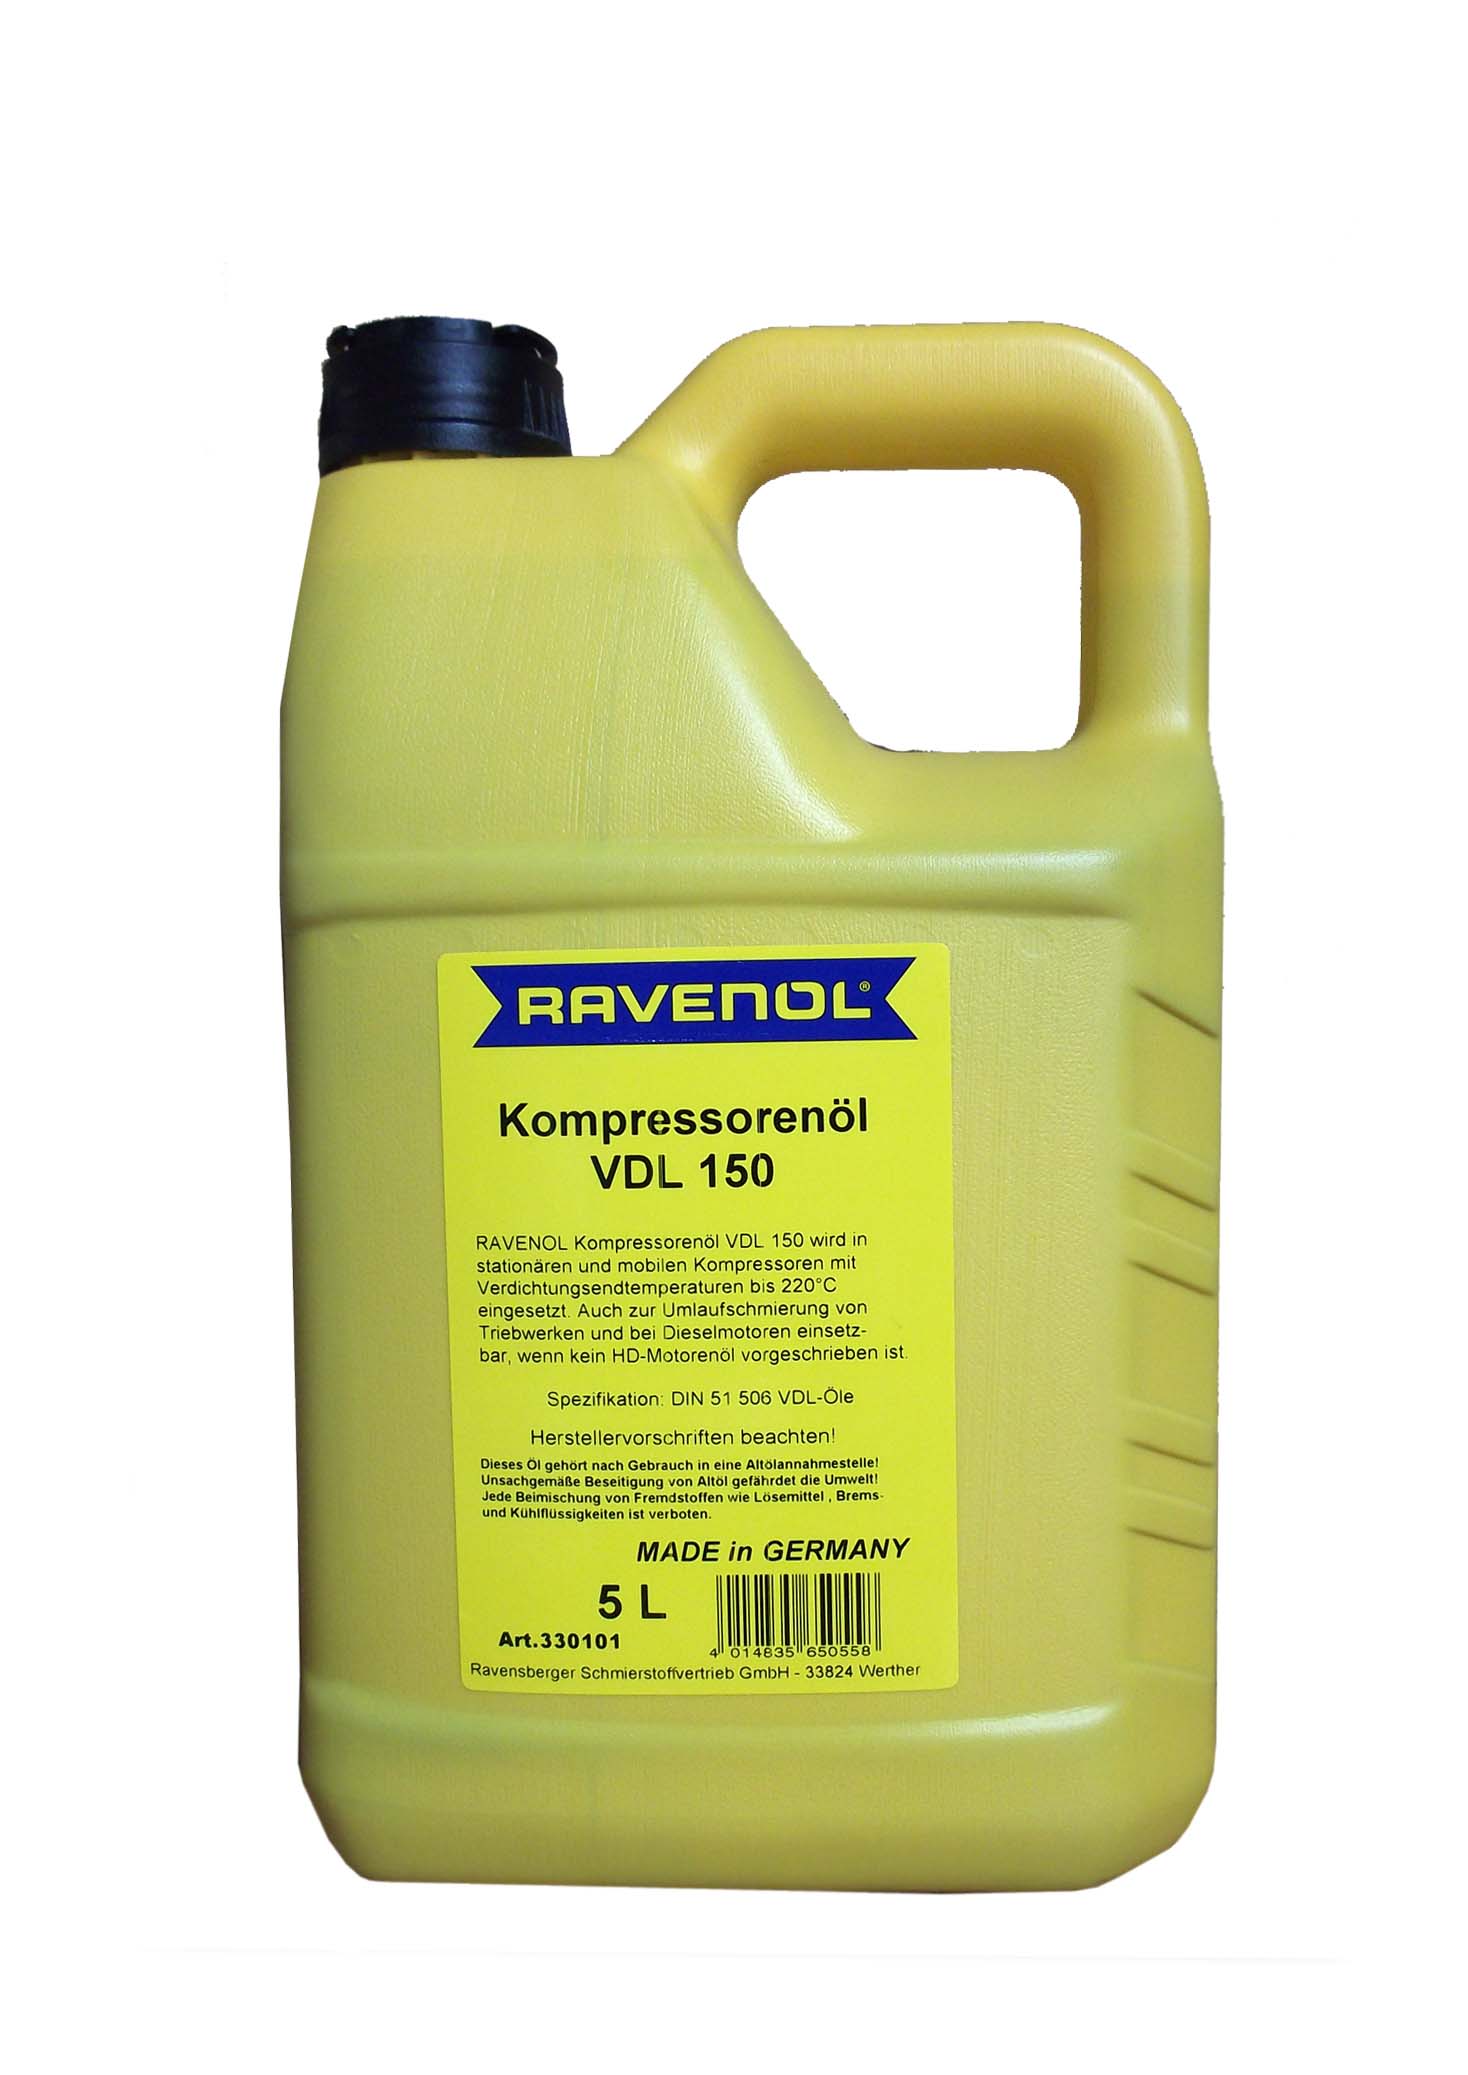 Трансмиссионное масло 220. Компрессорное масло Ravenol Kompressorenoel VDL 100. VDL 150 масло компрессорное. VDL 220 масло компрессорное. Ravenol 4014835736153 масло компрессорное Kompressorenoel VDL 100 5л.